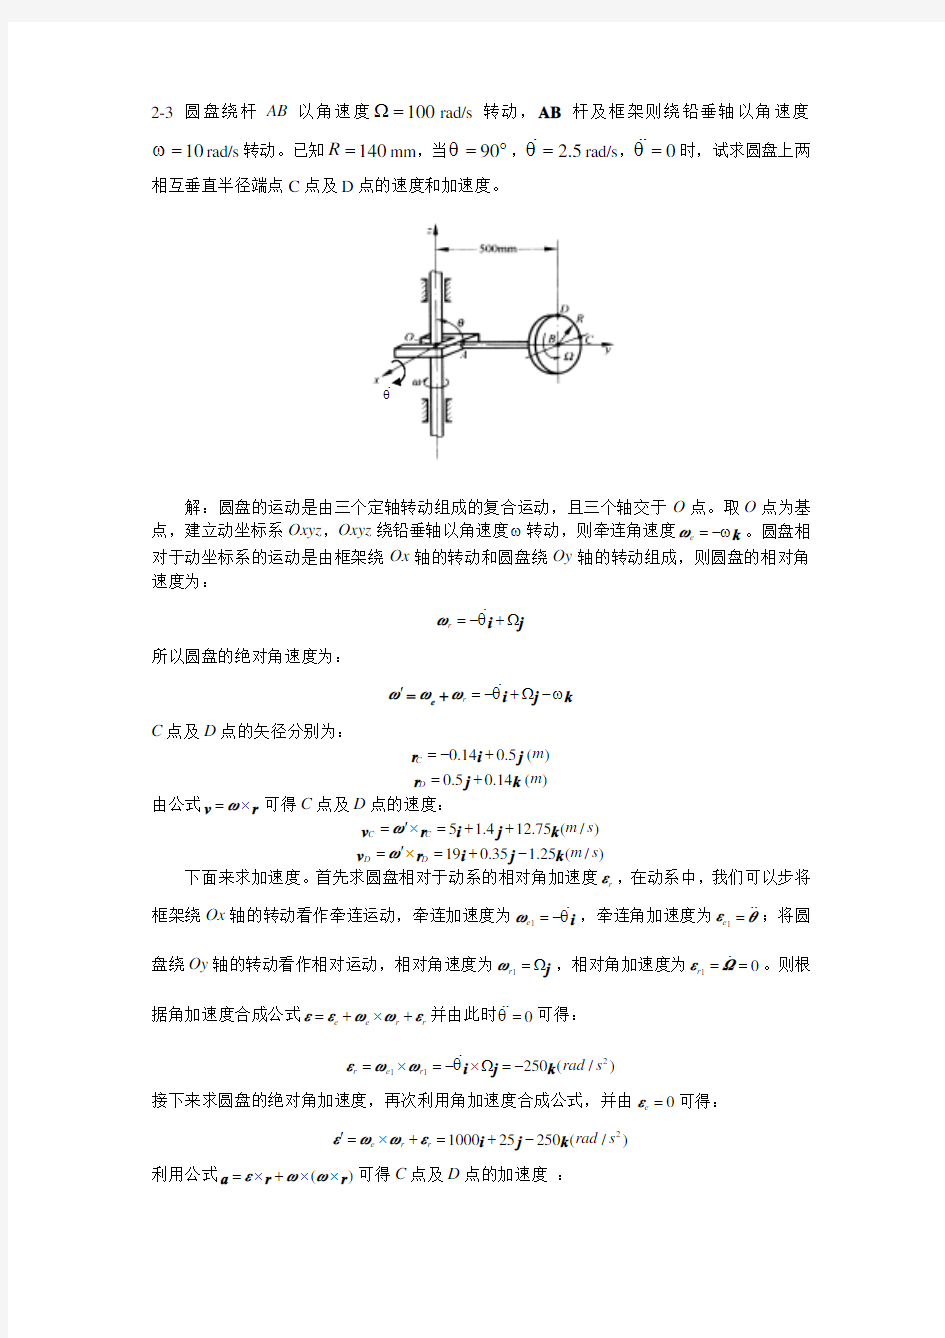 清华大学-理论力学-习题解答-2-03